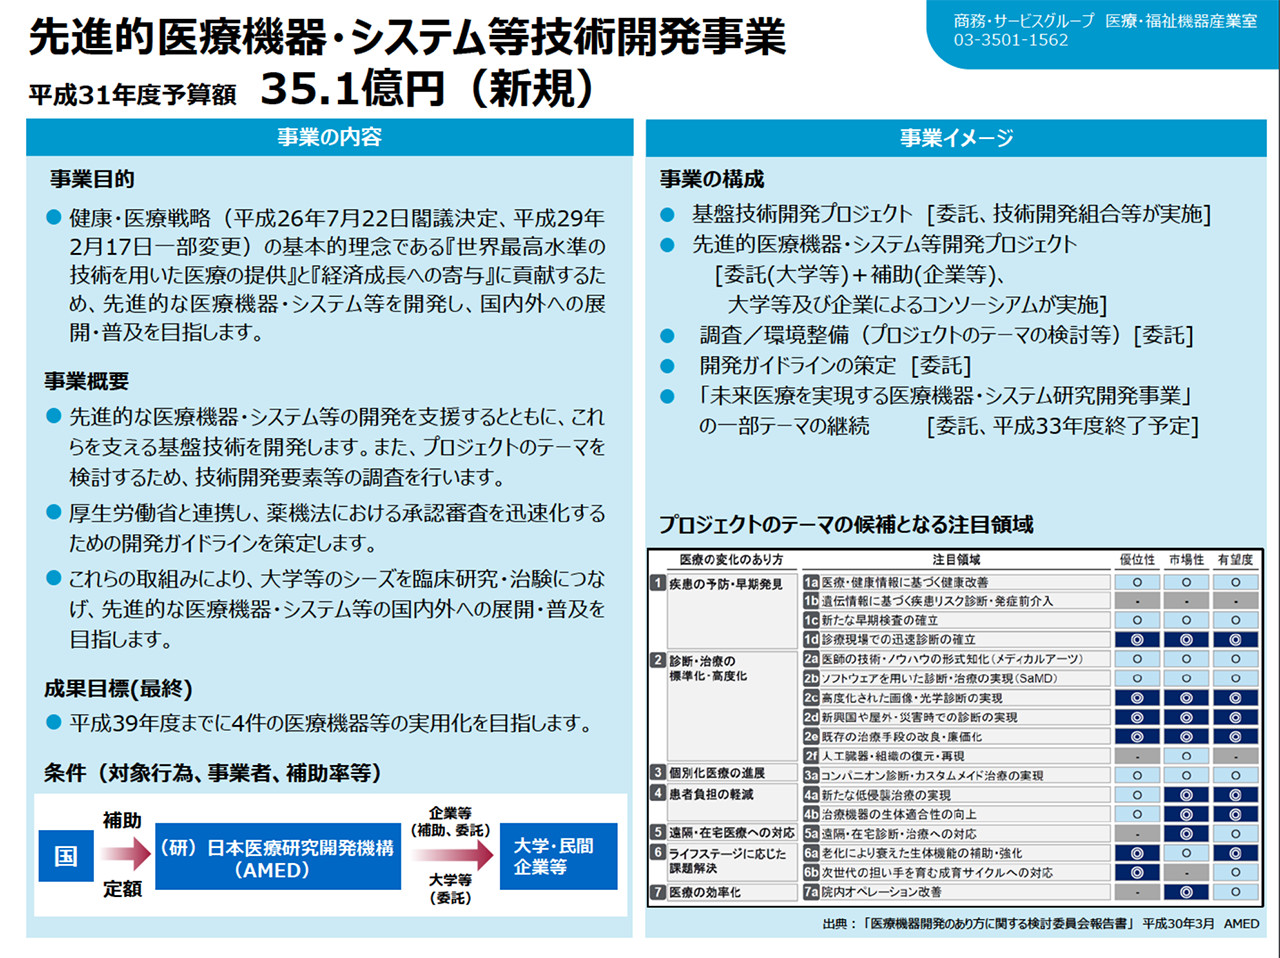 研究 機構 法人 日本 医療 開発 開発 国立 研究